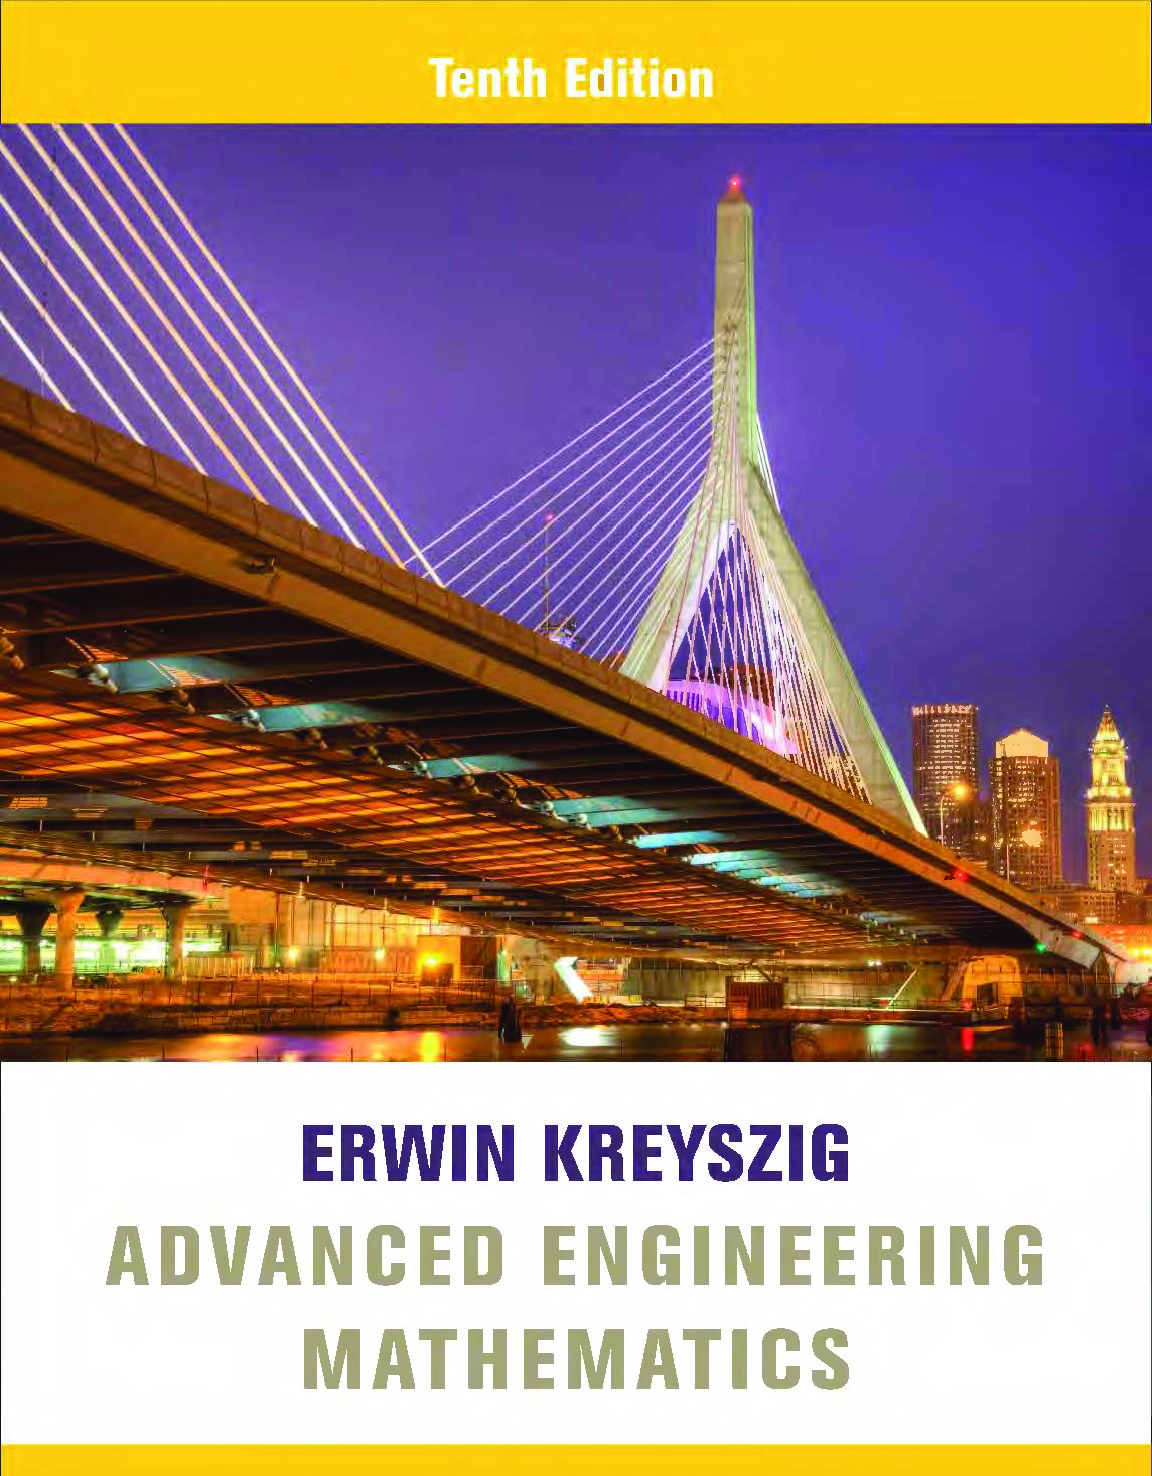 ADVANCED ENGINEERING MATHEMATICS BY ERWIN ERESZIG1